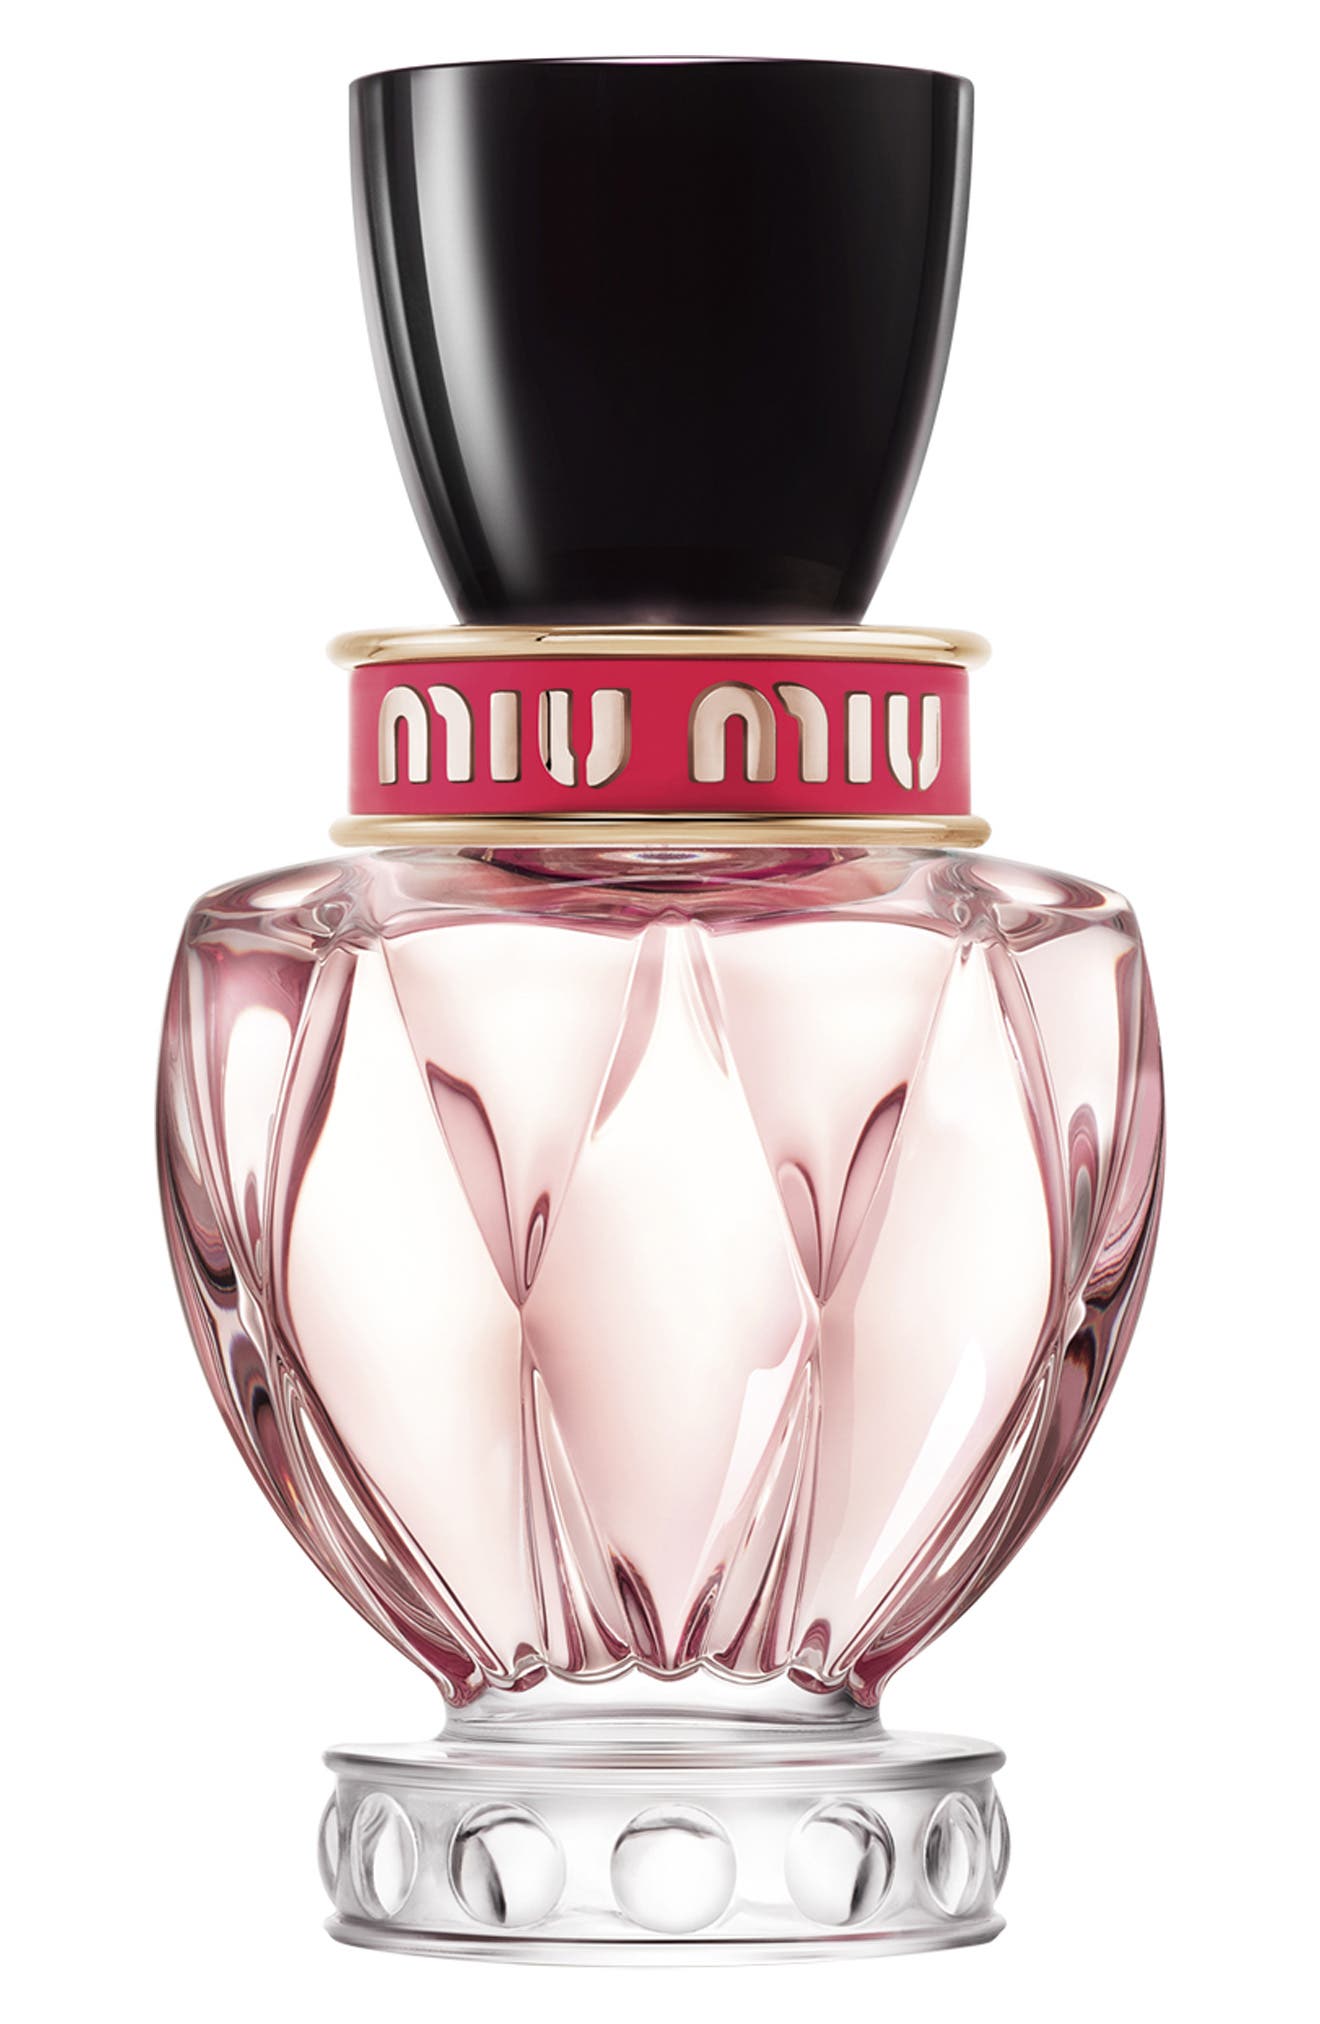 Miu Miu Twist Eau de Parfum at Nordstrom, Size 3.4 Oz